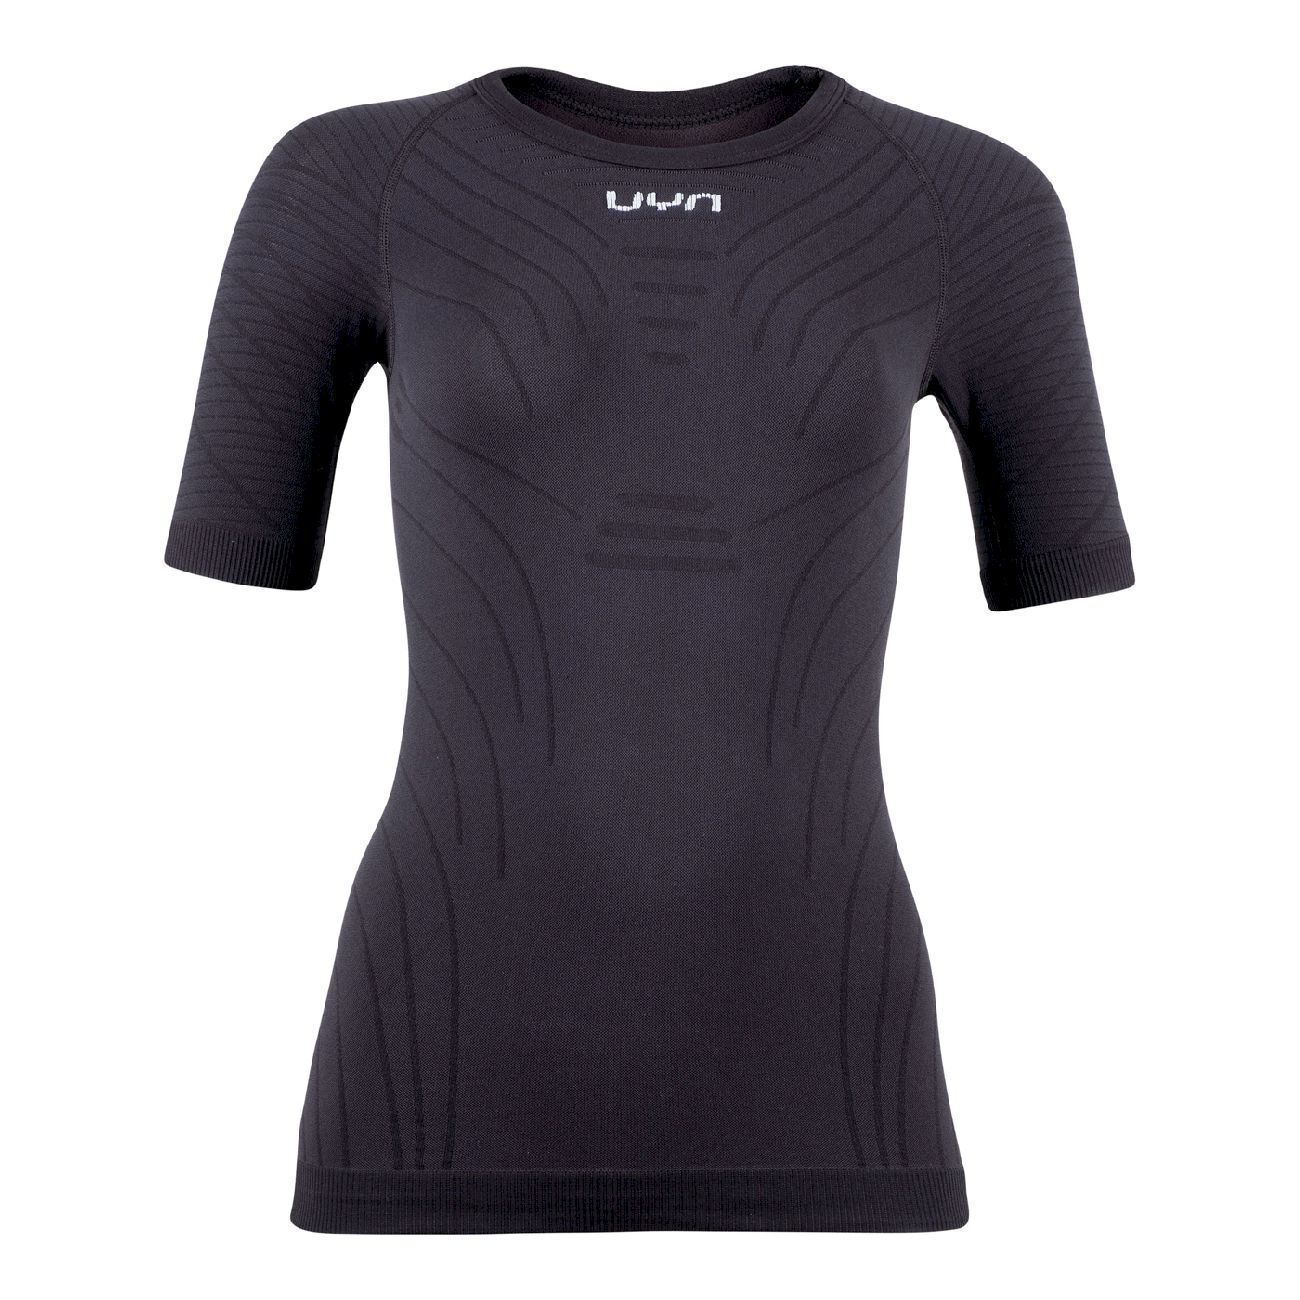 Uyn Motyon 2.0 UW Shirt Short SL - Underkläder syntet - Dam